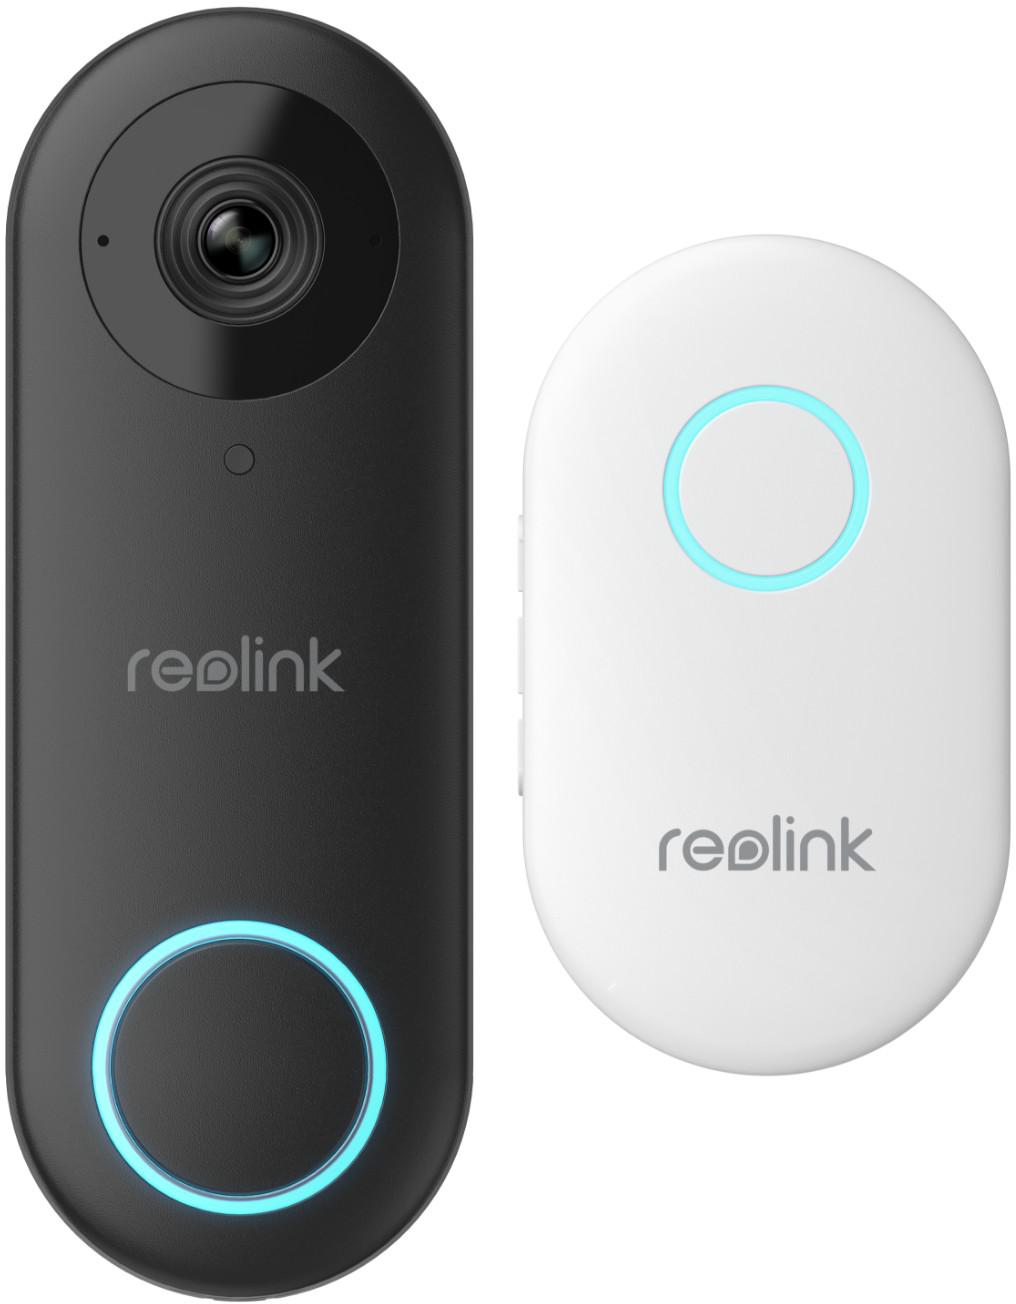 Bezprzewodowy wideodzwonek Reolink Wi-Fi 5MPx - łatwa instalacja i regulacja kąta video